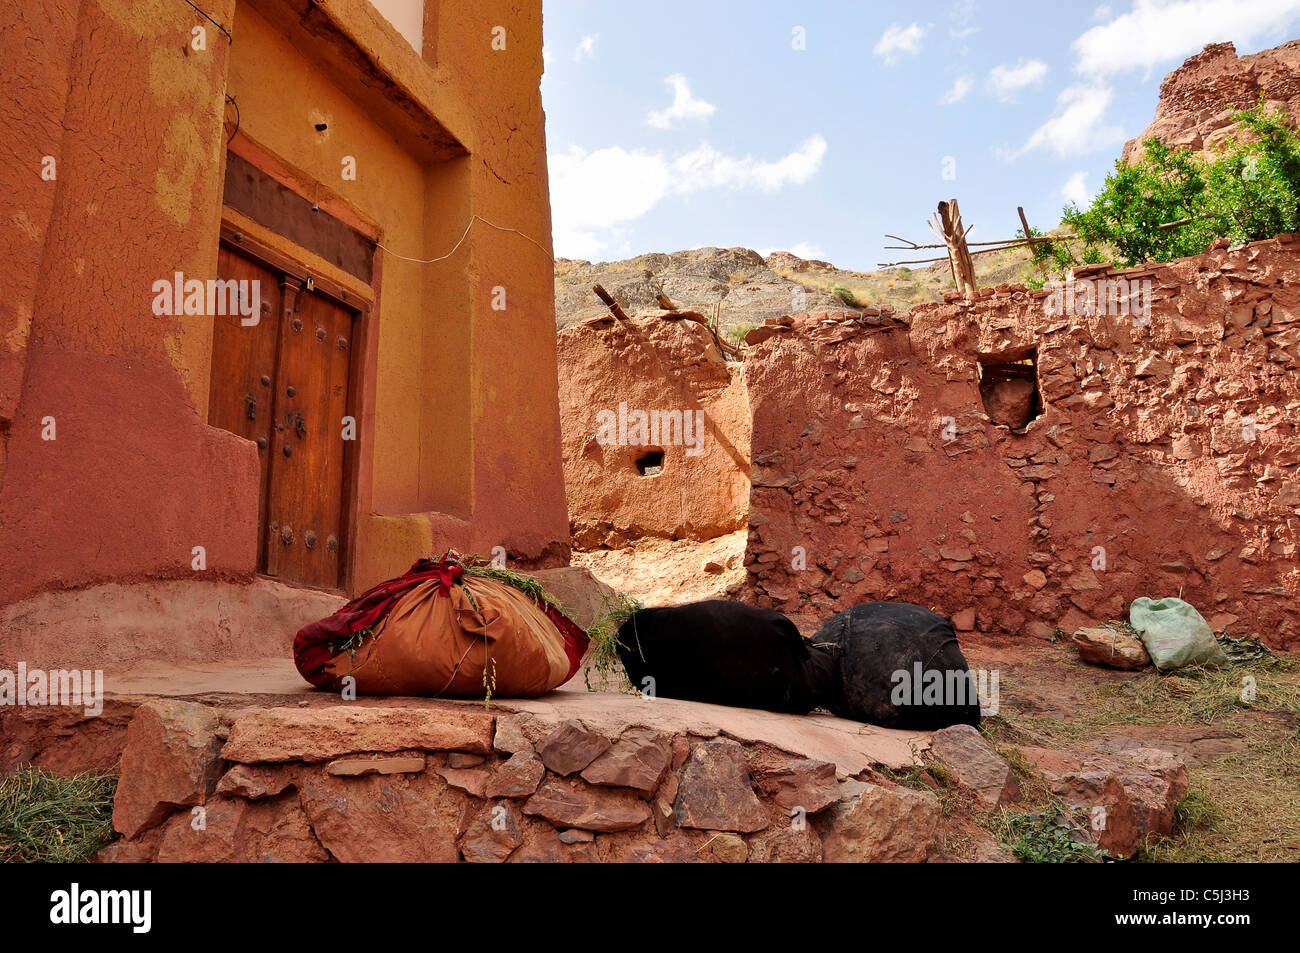 Bündel von Stroh und Luzerne für die Fütterung der Tiere vor einem alten Haus in Abyāneh Dorf, Isfahan Iran. Stockfoto